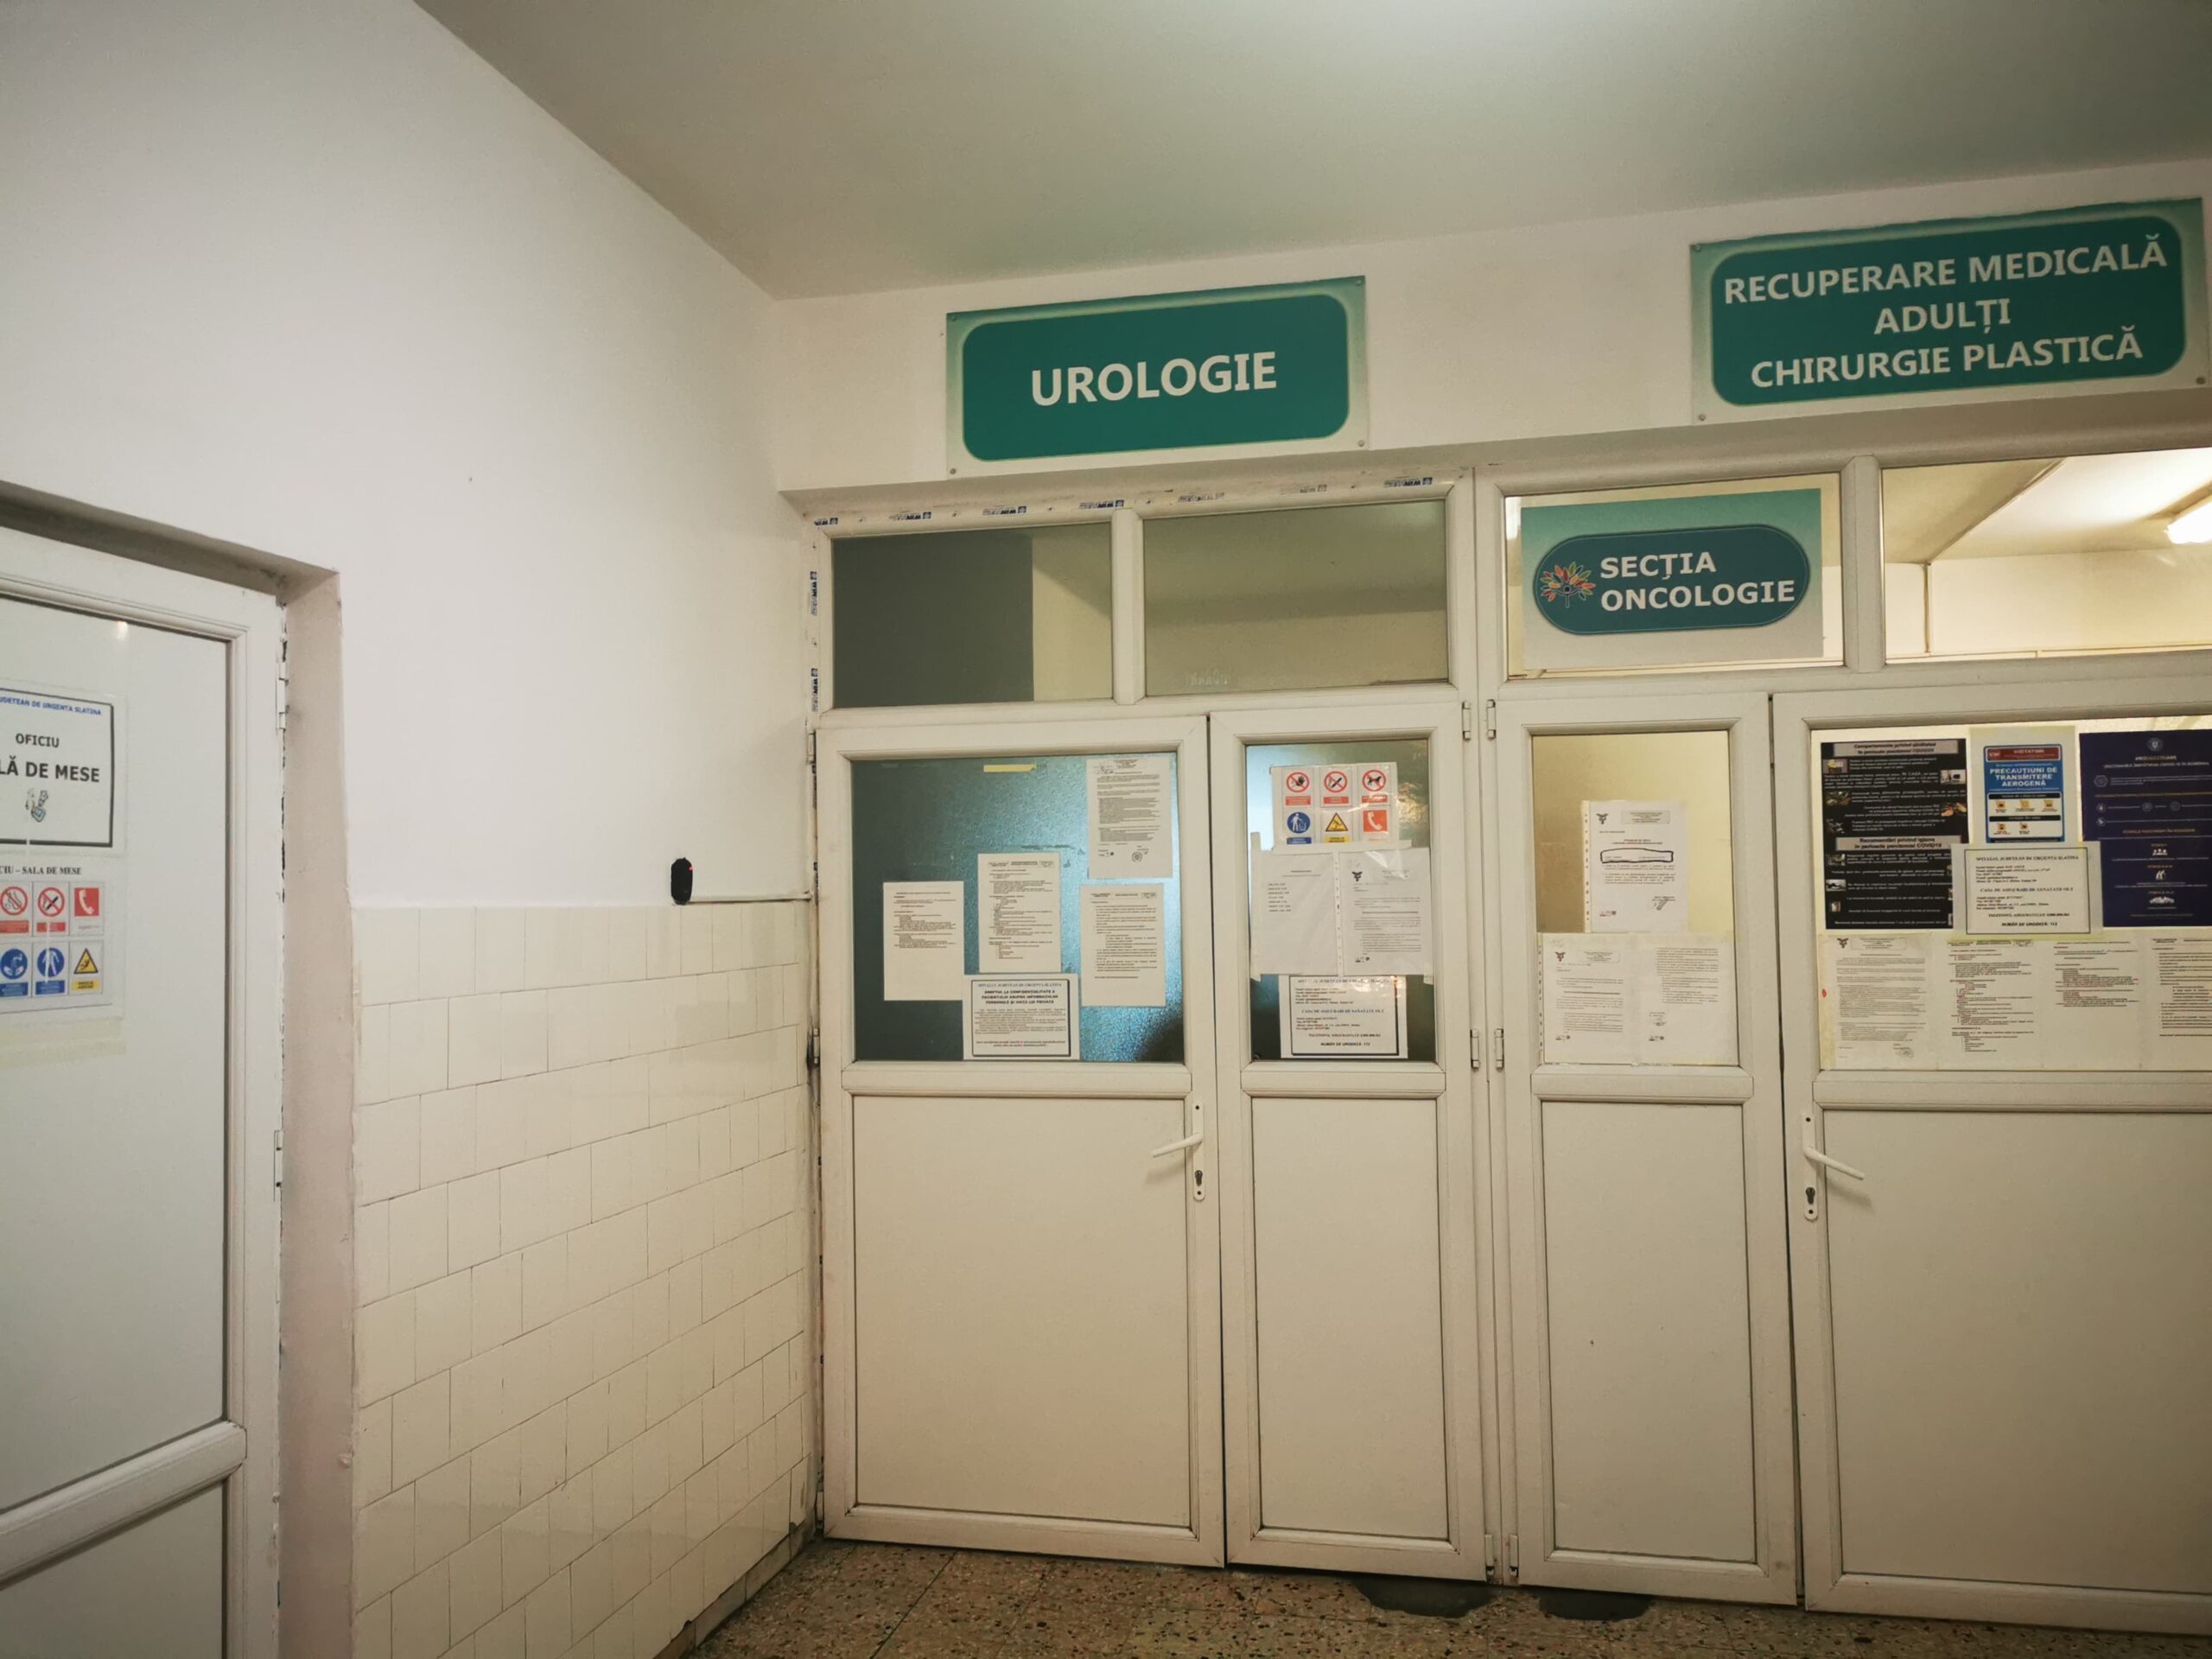 De la 1 iulie, pacienţii cu patologii de chirurgie plastică şi urologice, de la SJU Slatina, au parte de asistenţă medicală continuă în urma înfiinţării unor noi linii de gardă